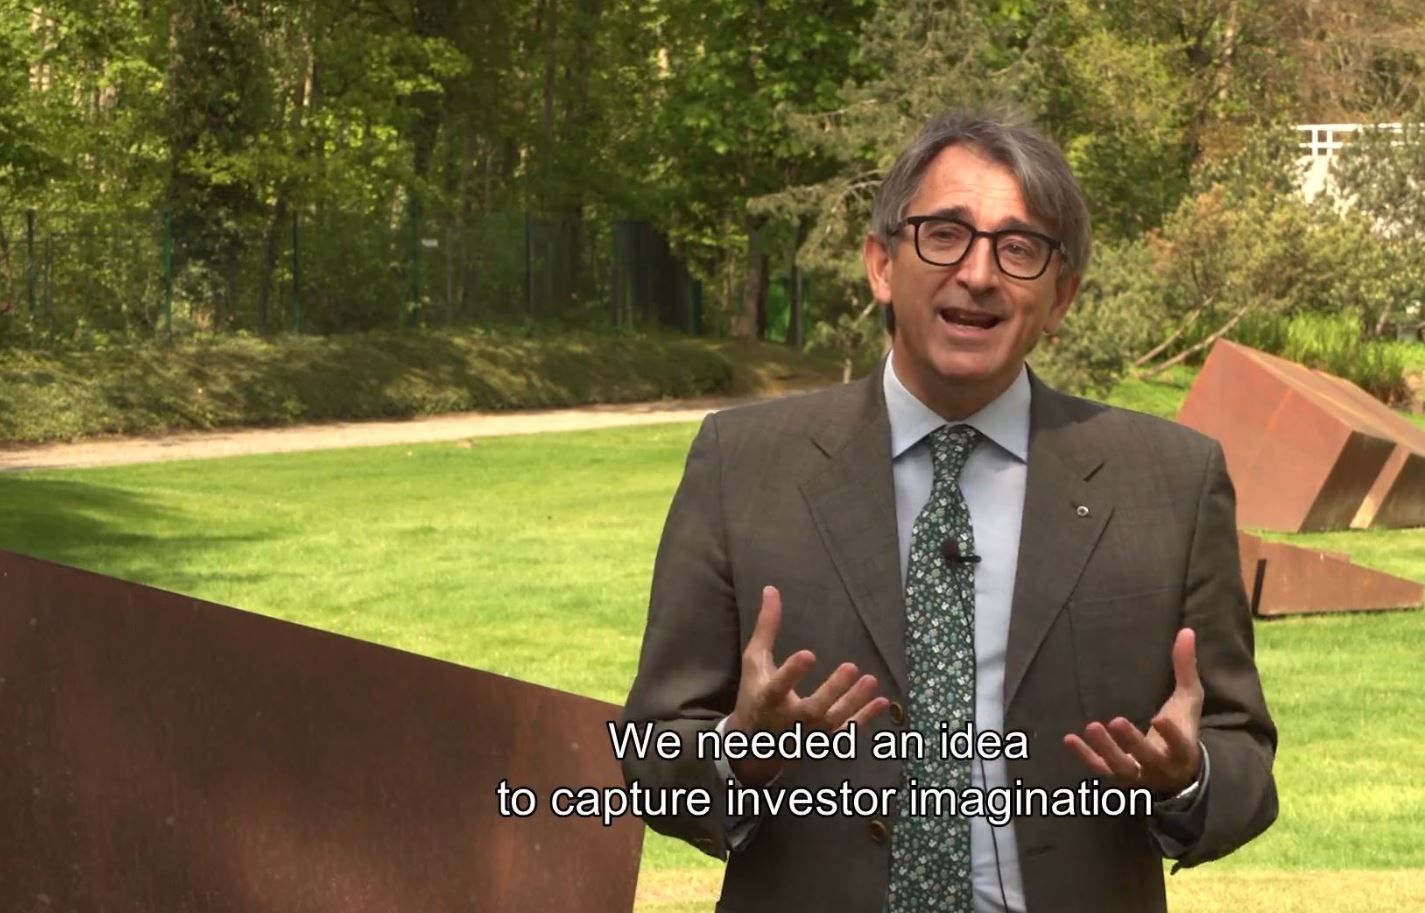 Aldo Romani von der EU-Bank erinnert daran, dass der Erfolg von grünen Anleihen vor zehn Jahren keineswegs sicher war.